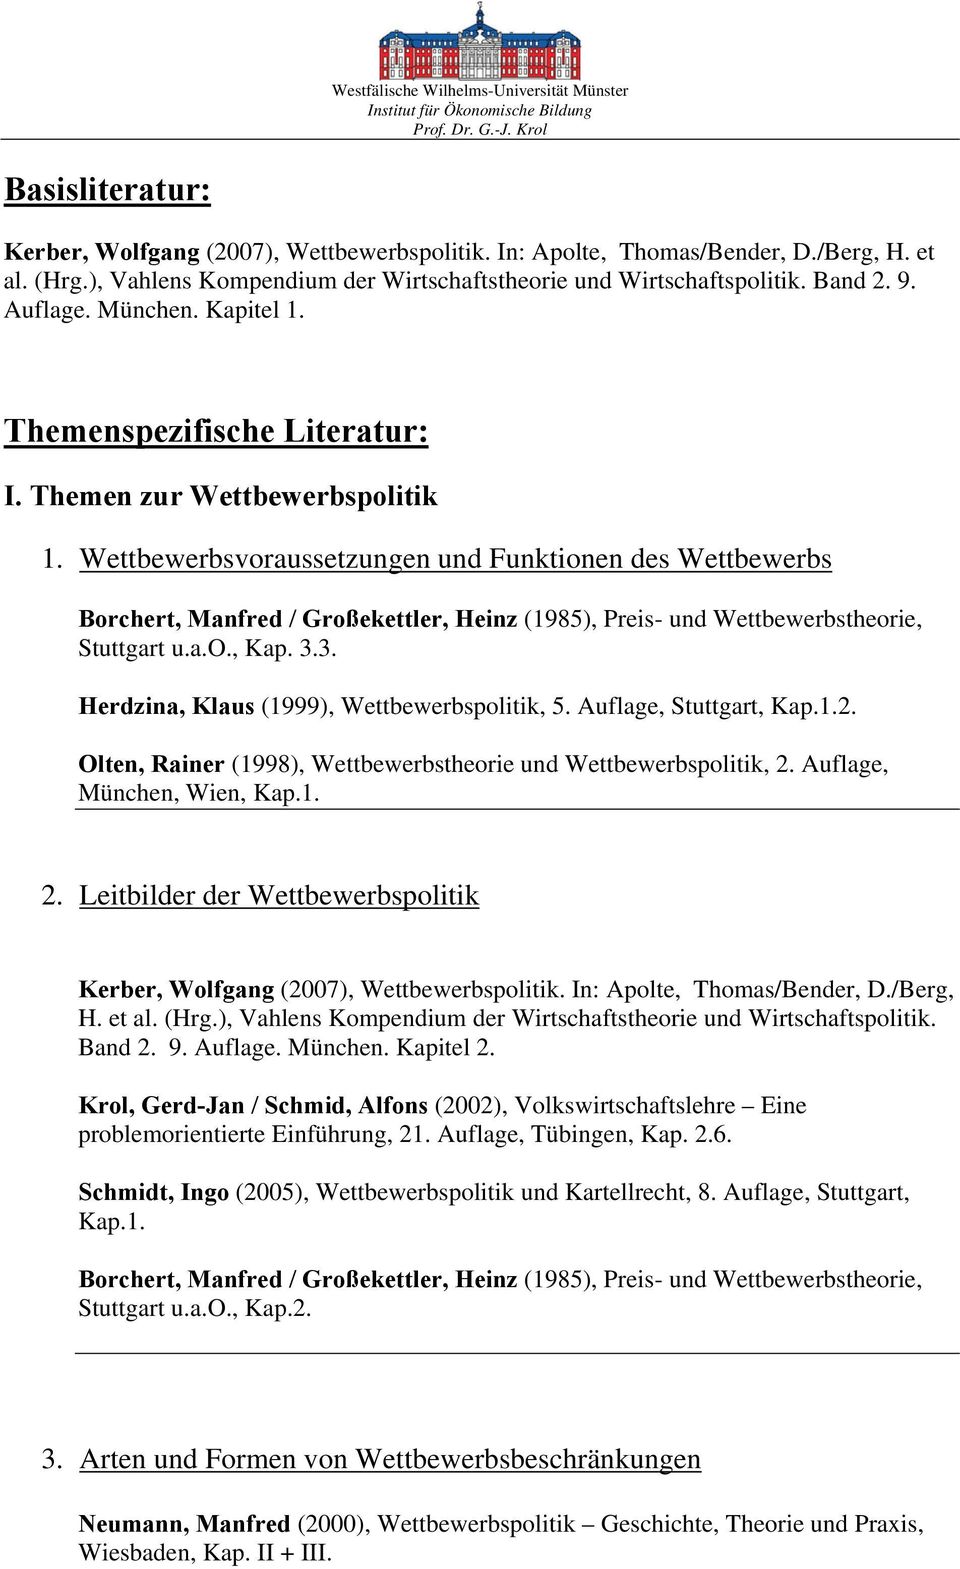 Wettbewerbsvoraussetzungen und Funktionen des Wettbewerbs Borchert, Manfred / Großekettler, Heinz (1985), Preis- und Wettbewerbstheorie, Stuttgart u.a.o., Kap. 3.